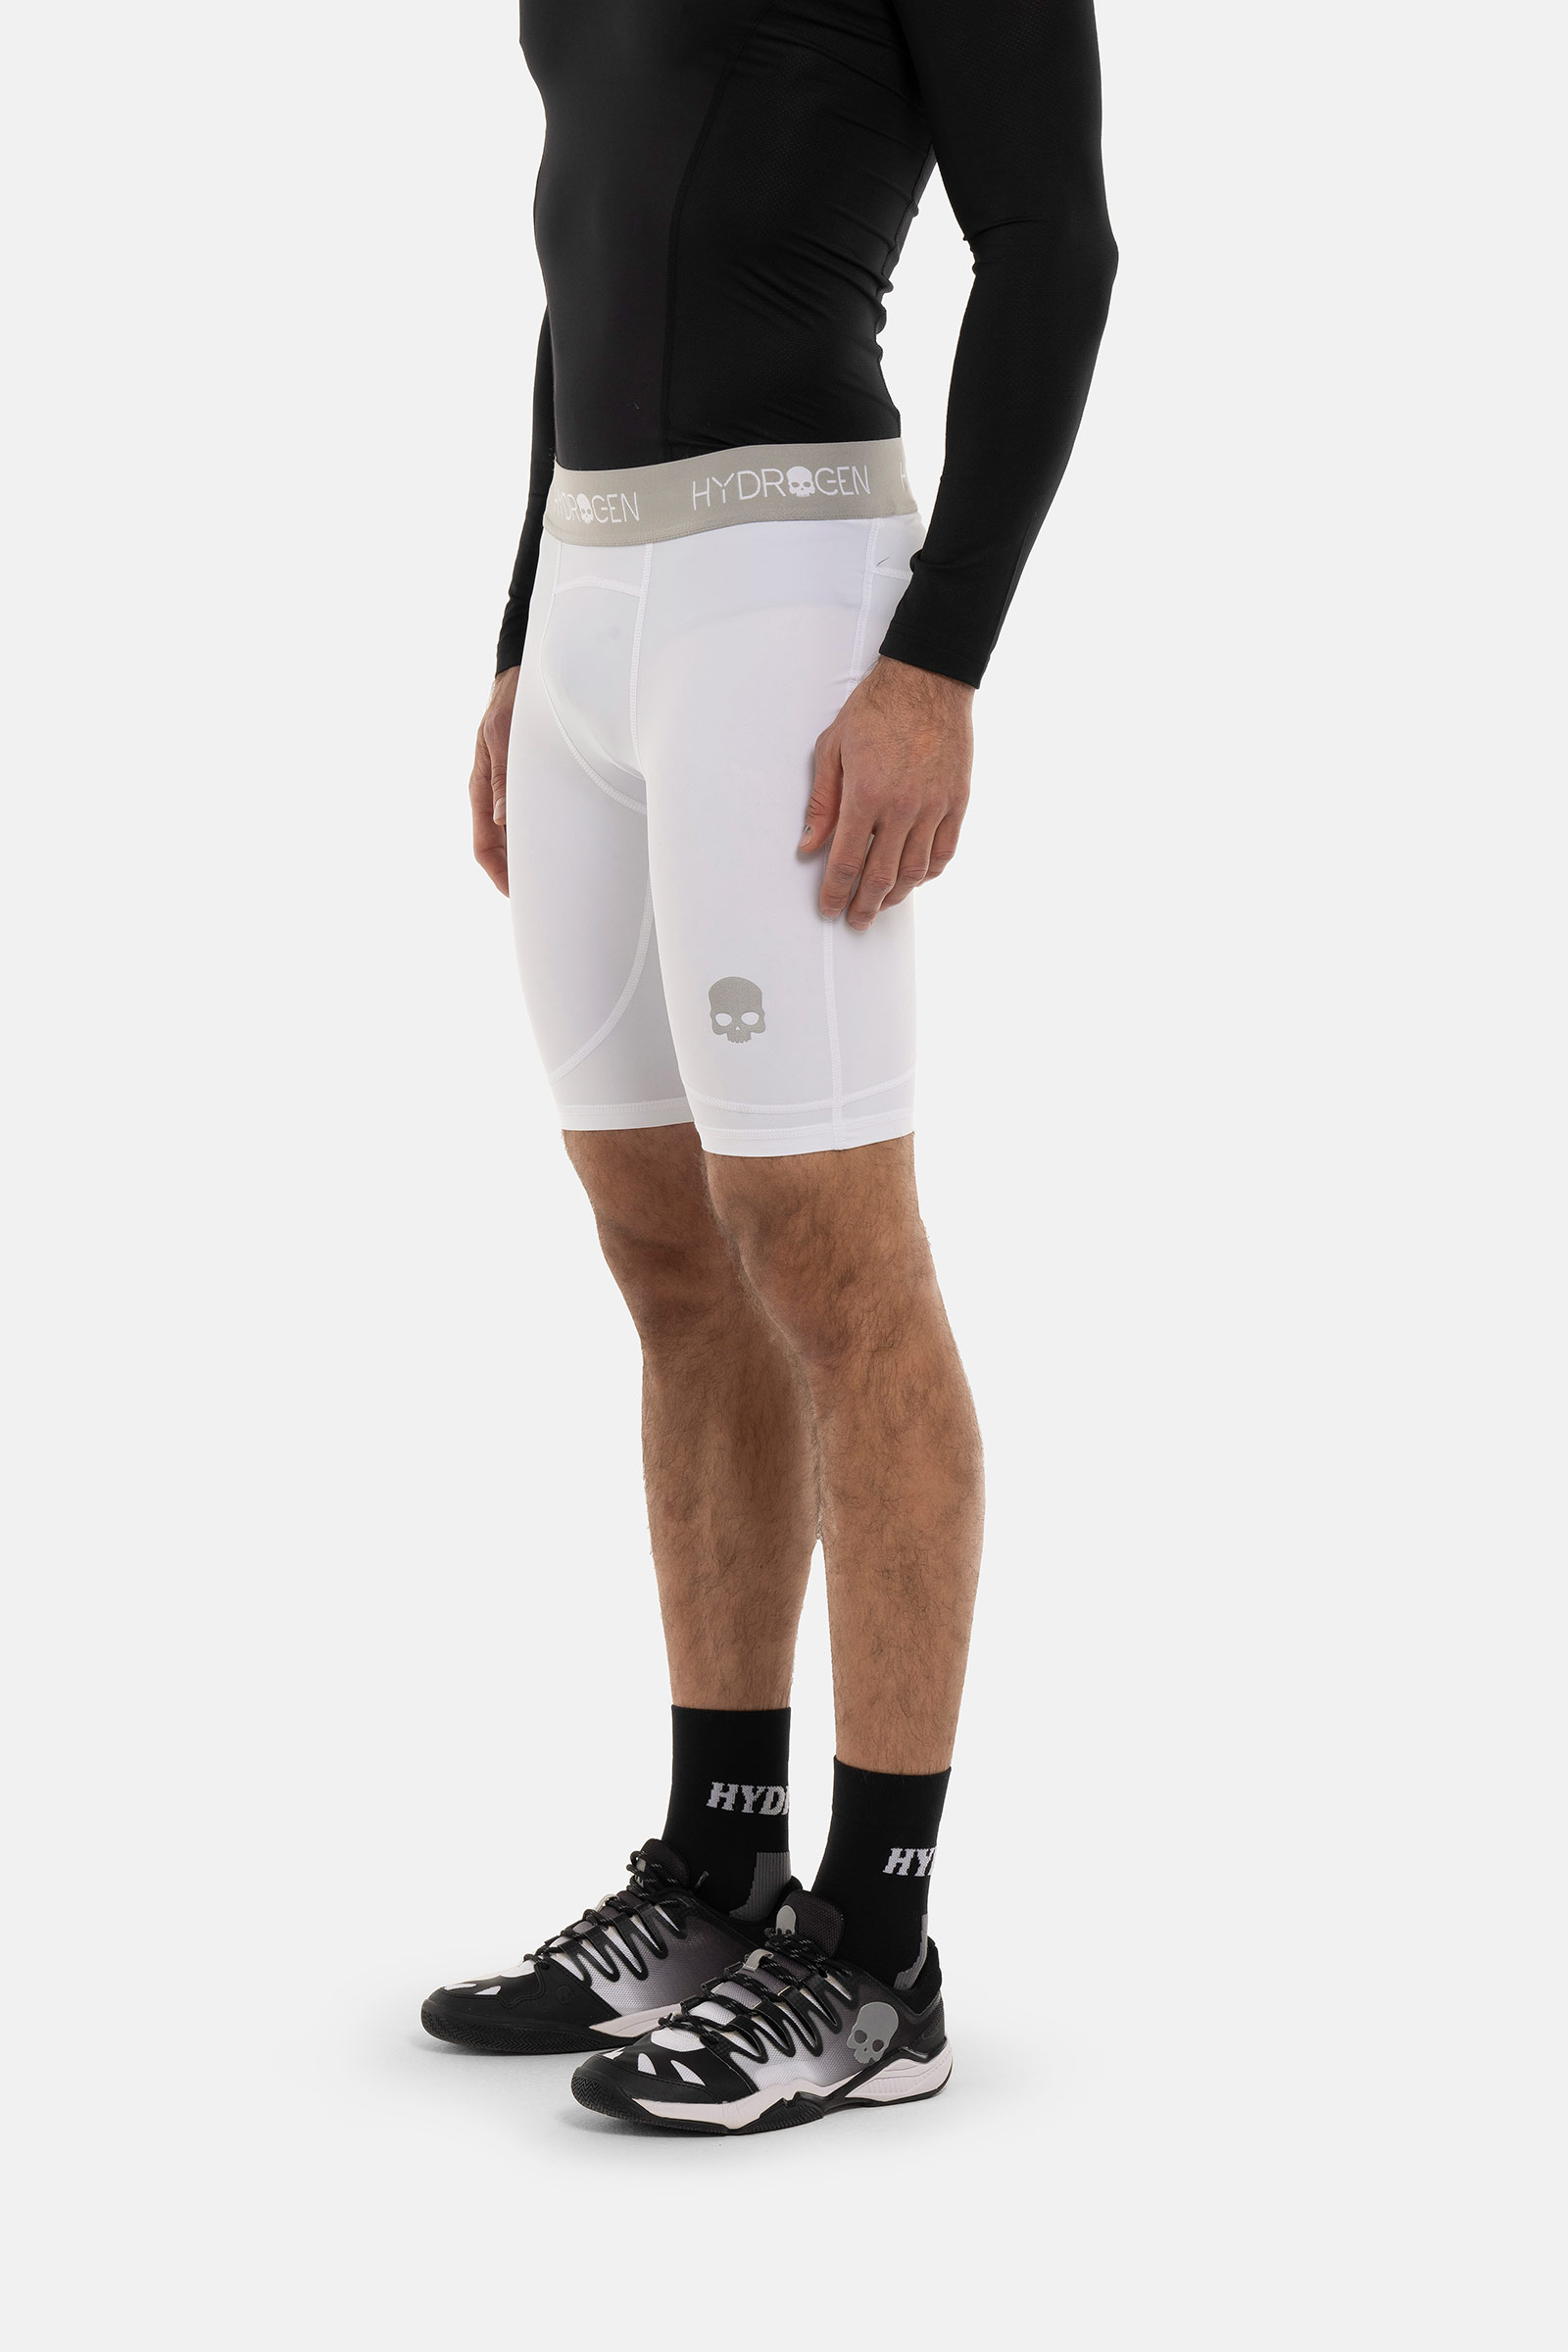 ESSENTIAL SECOND SKIN SHORTS - WHITE - Hydrogen - Luxury Sportwear